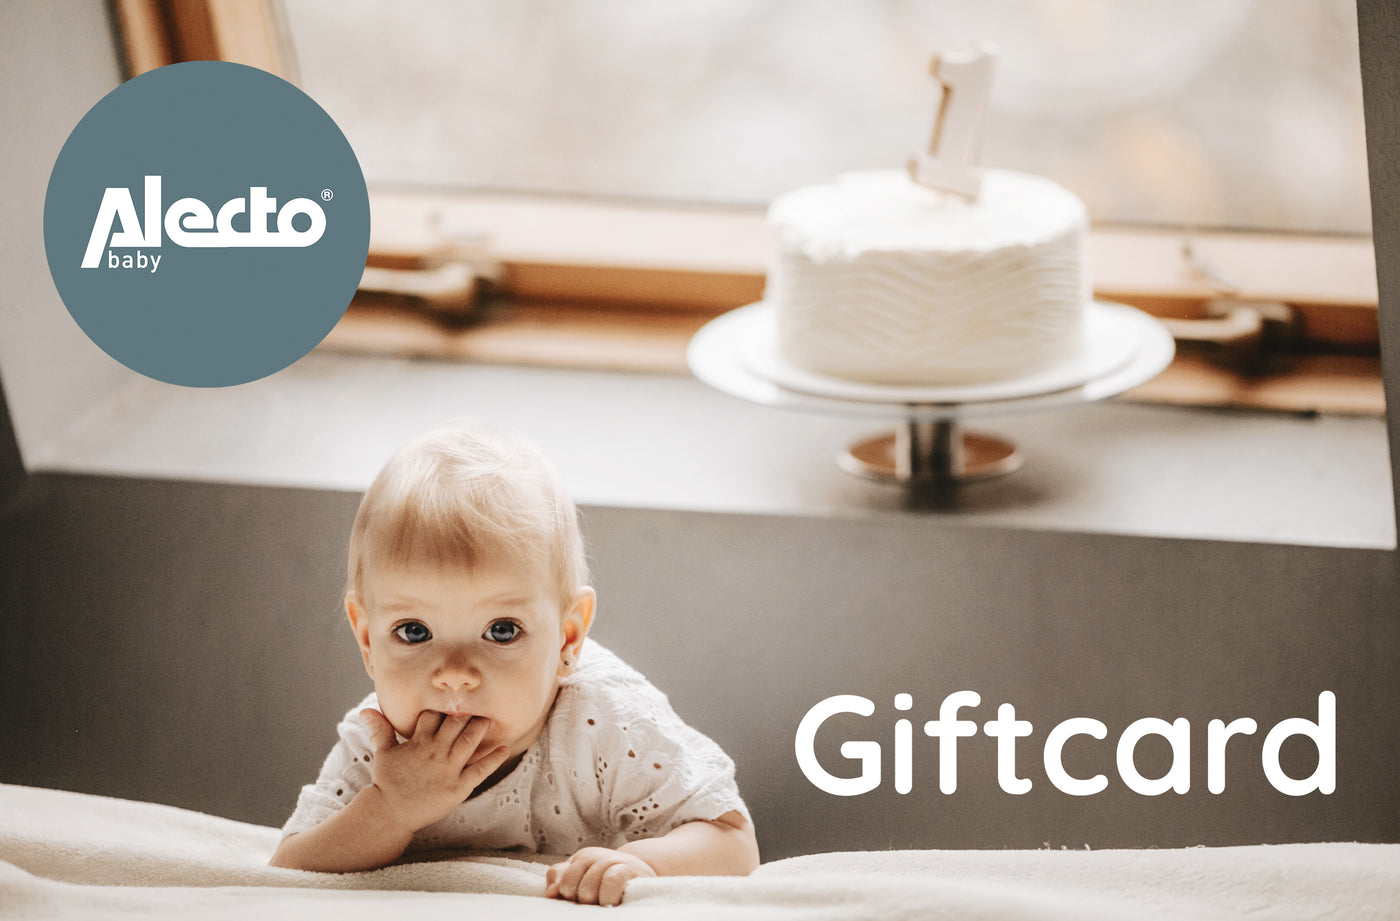 Gift card - Alecto Baby (digital)